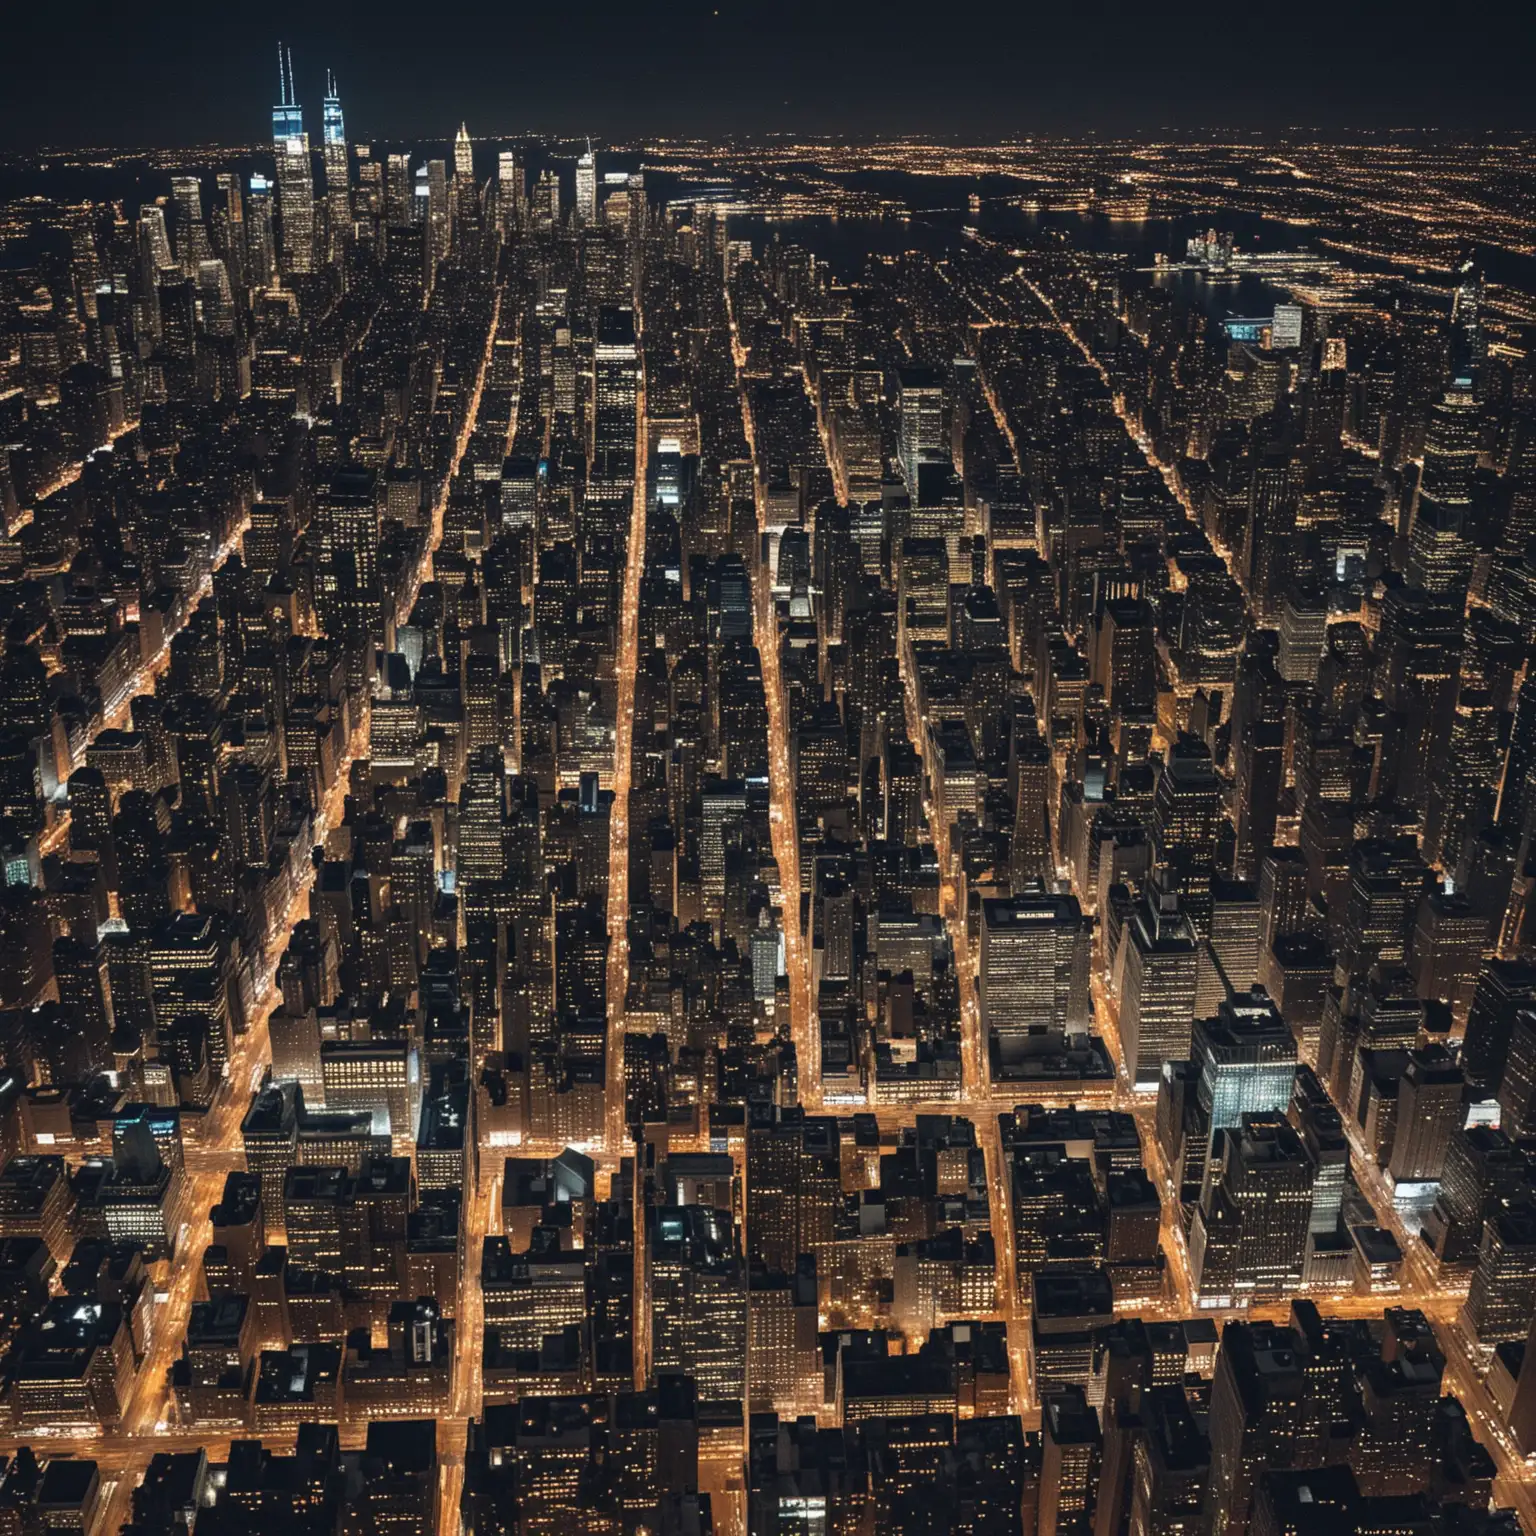 Снимок ночного города Нью-Йорк, с высоты птичьего полета